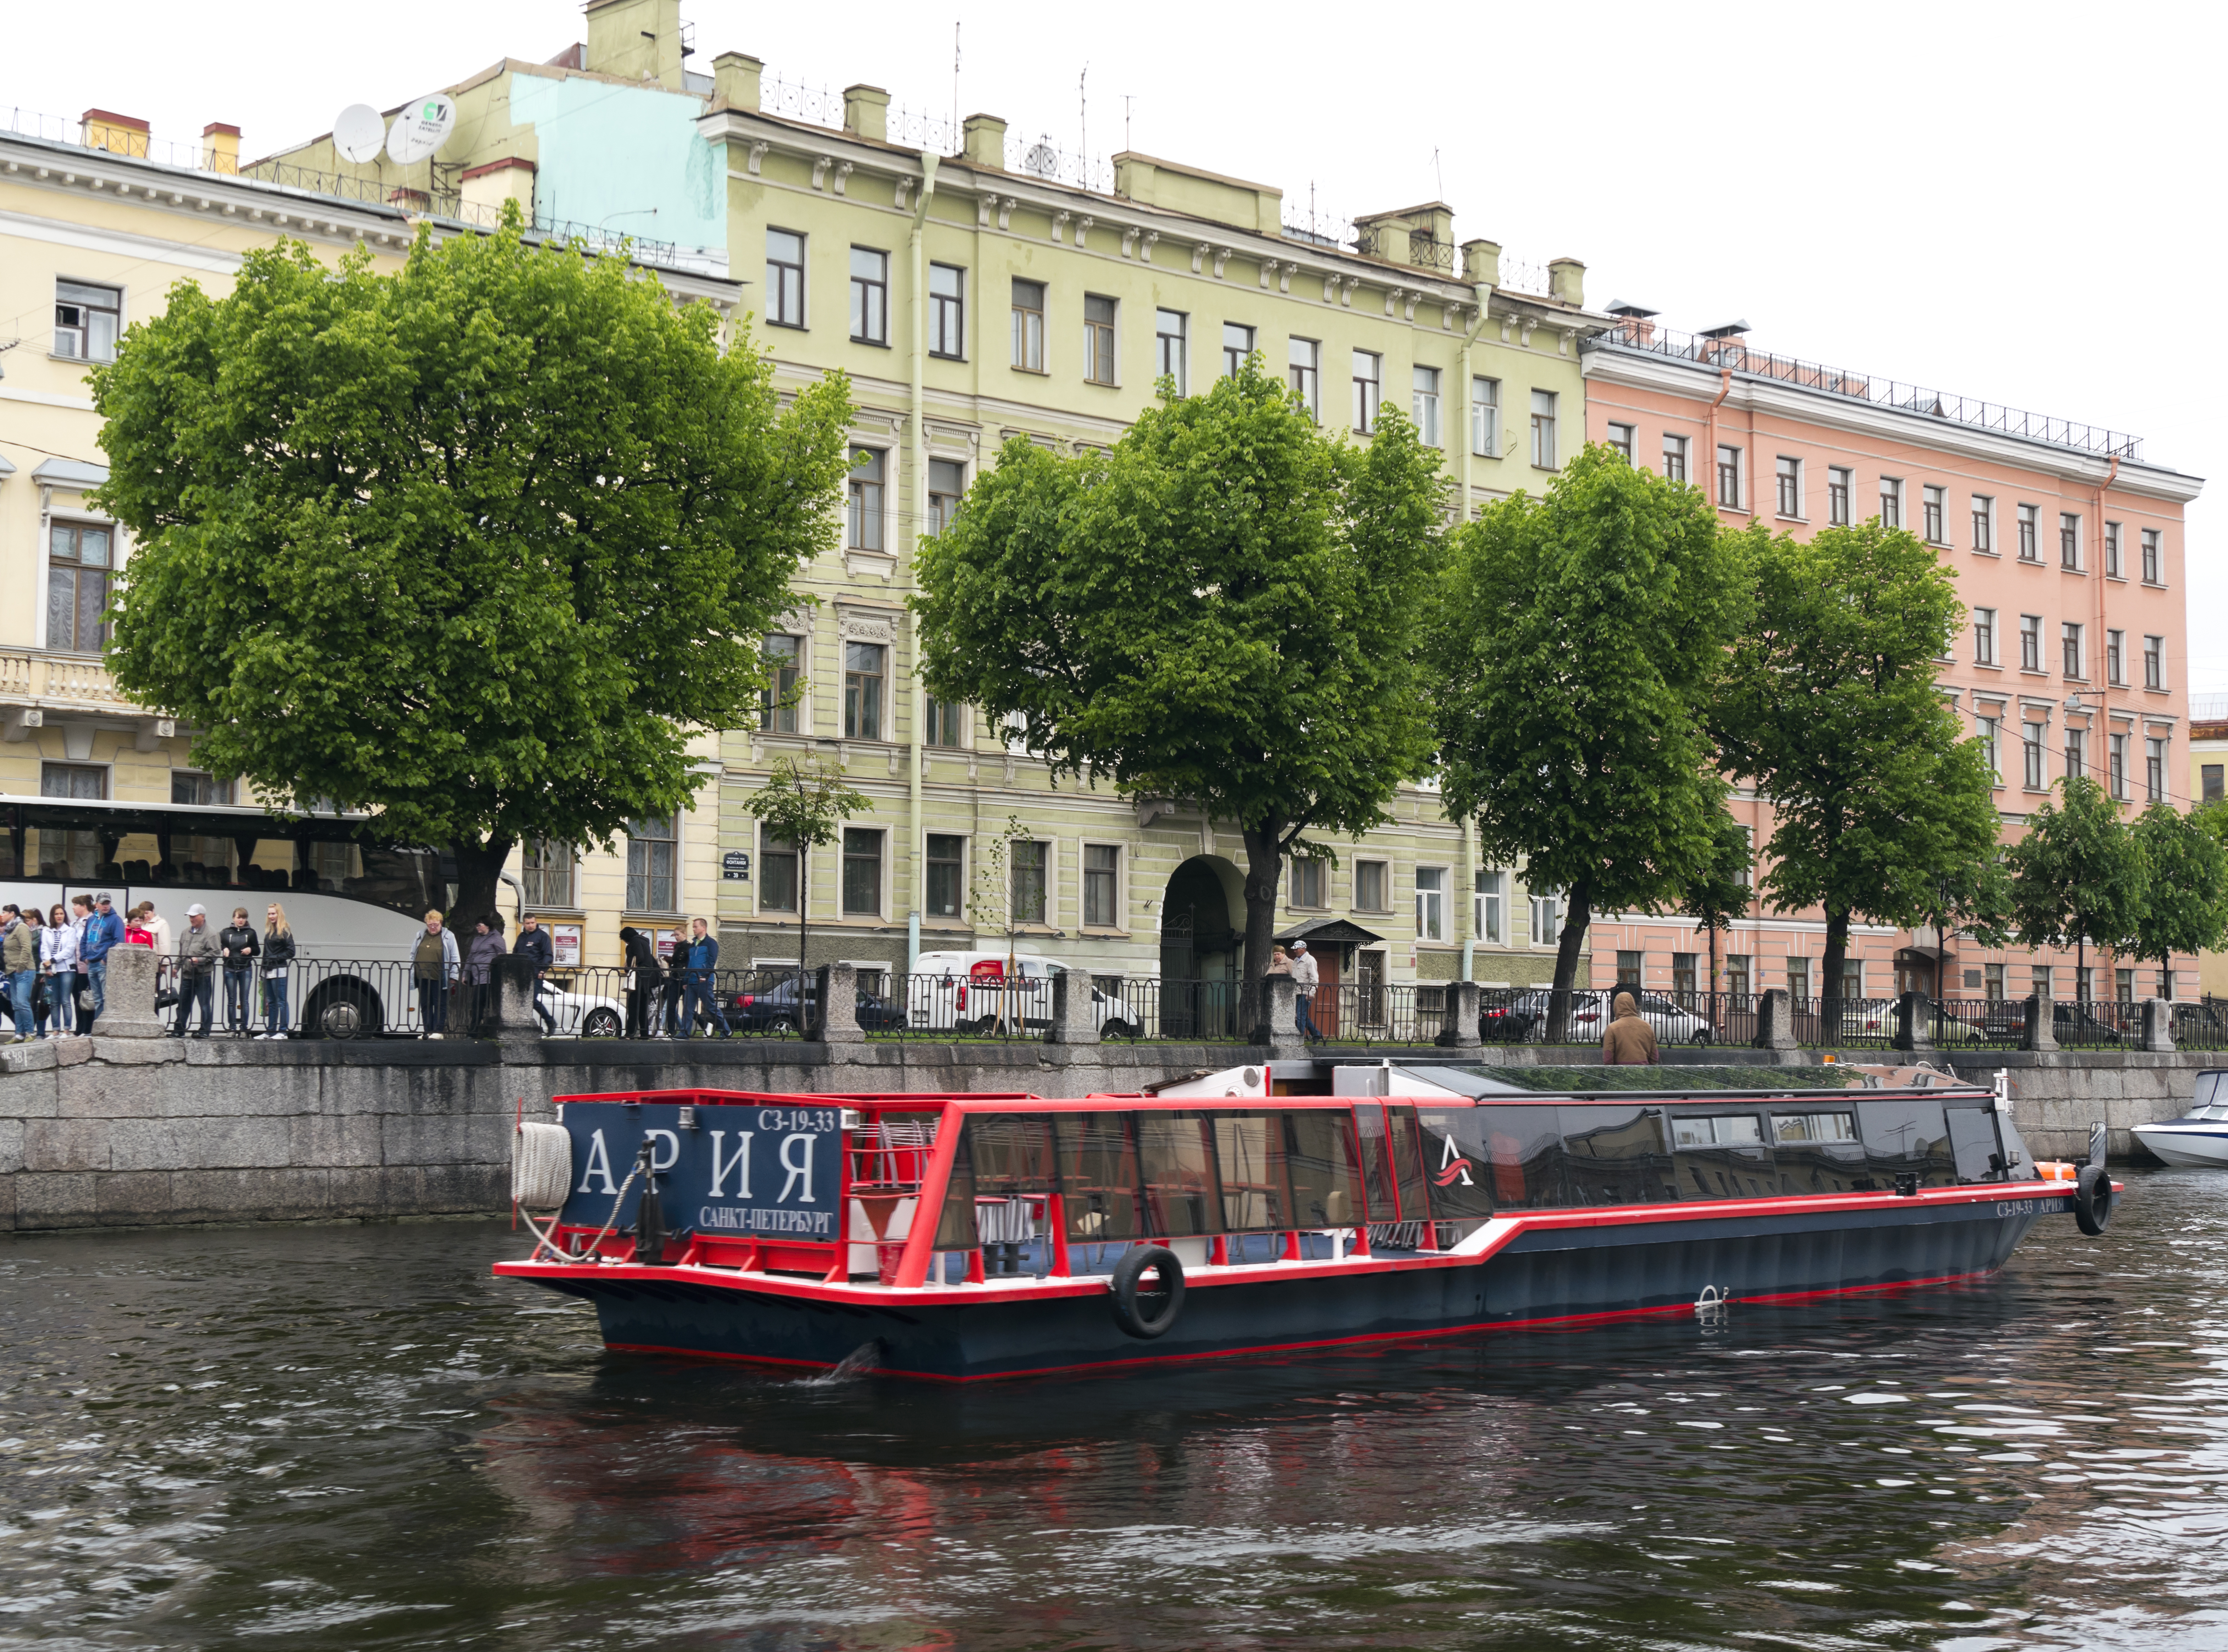 Tourboat in St Petersburg